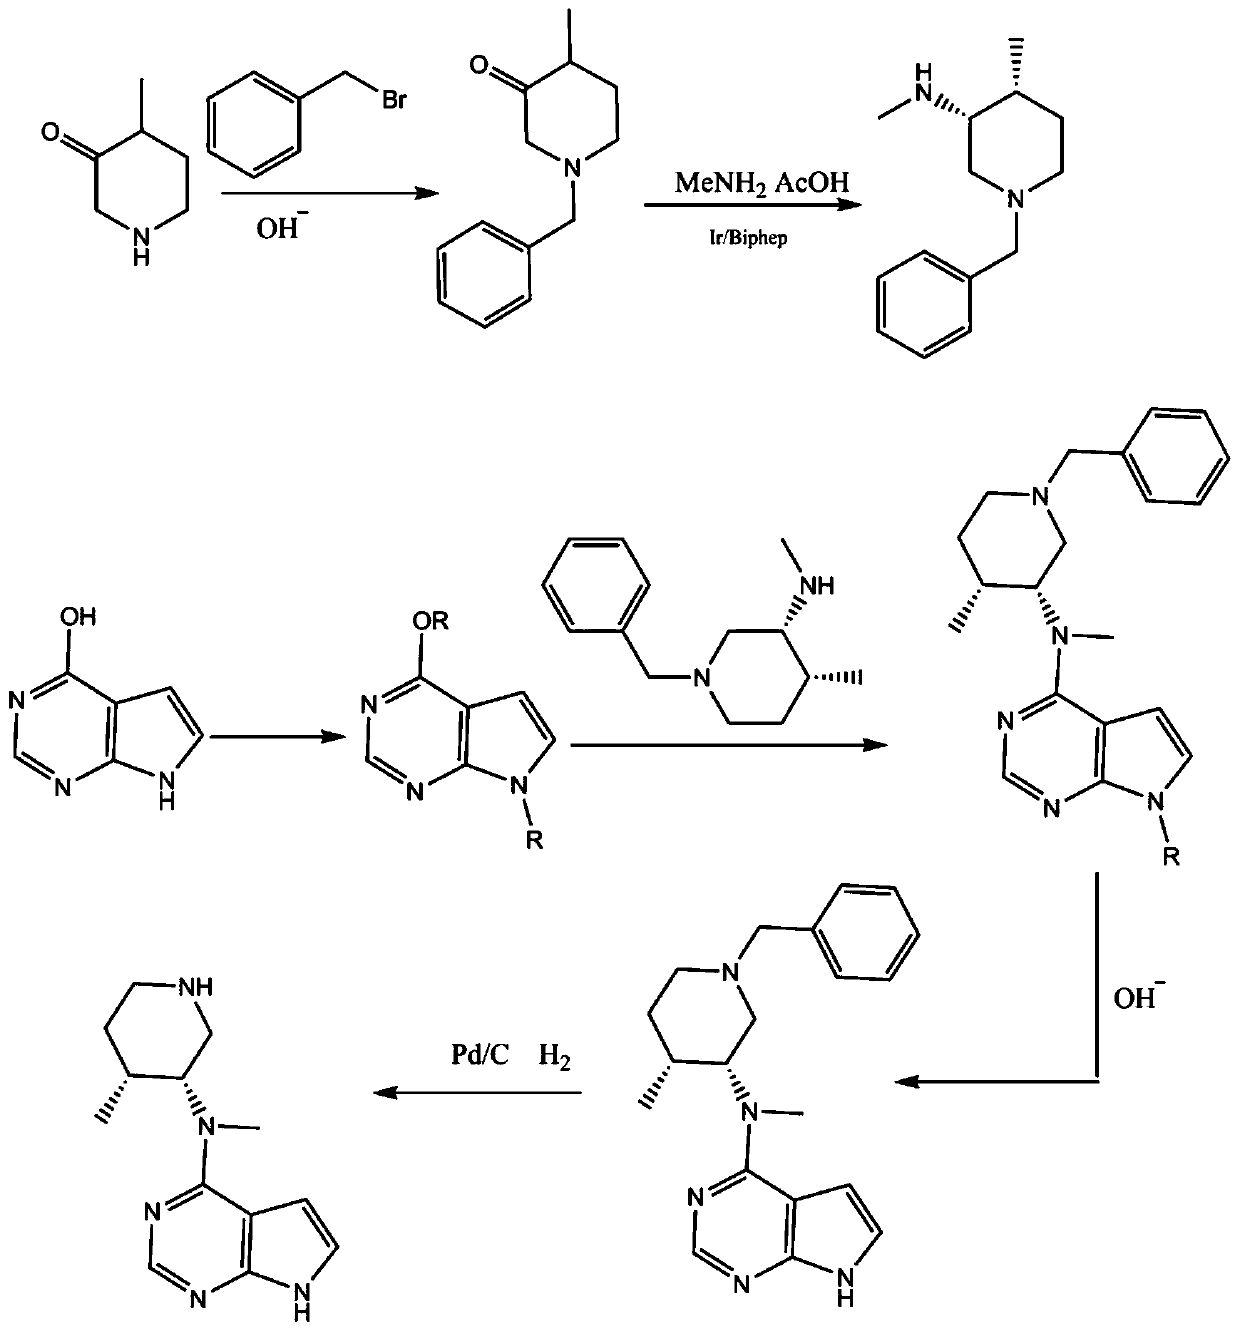 Preparing method of N-methyl-N-(4-methylpiperidine)-3-yl-7H-pyrropyrimidine-4-amine